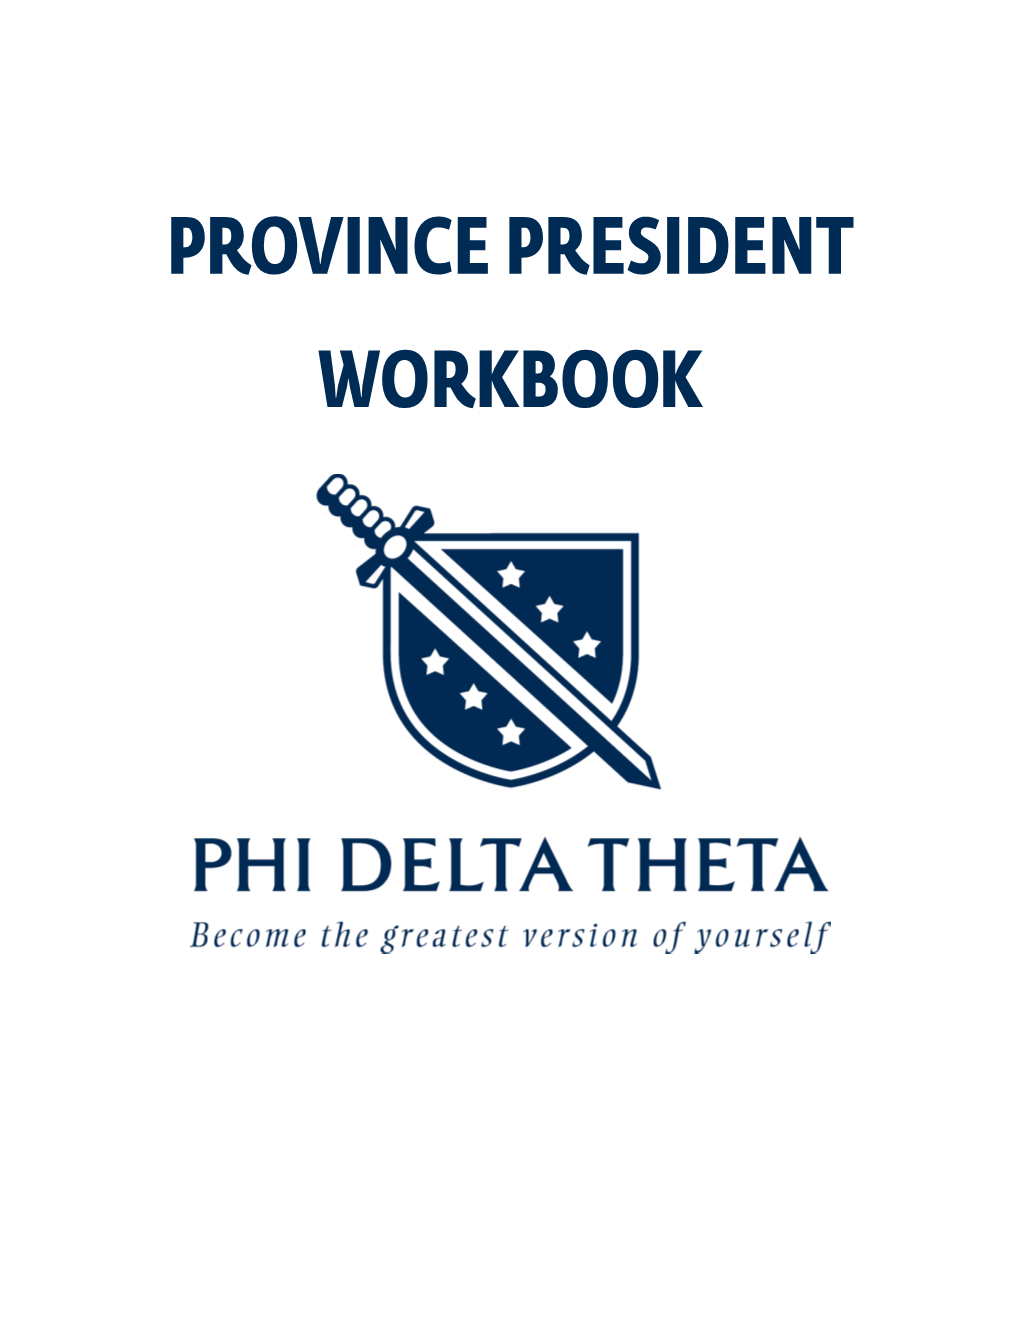 Province President Workbook I